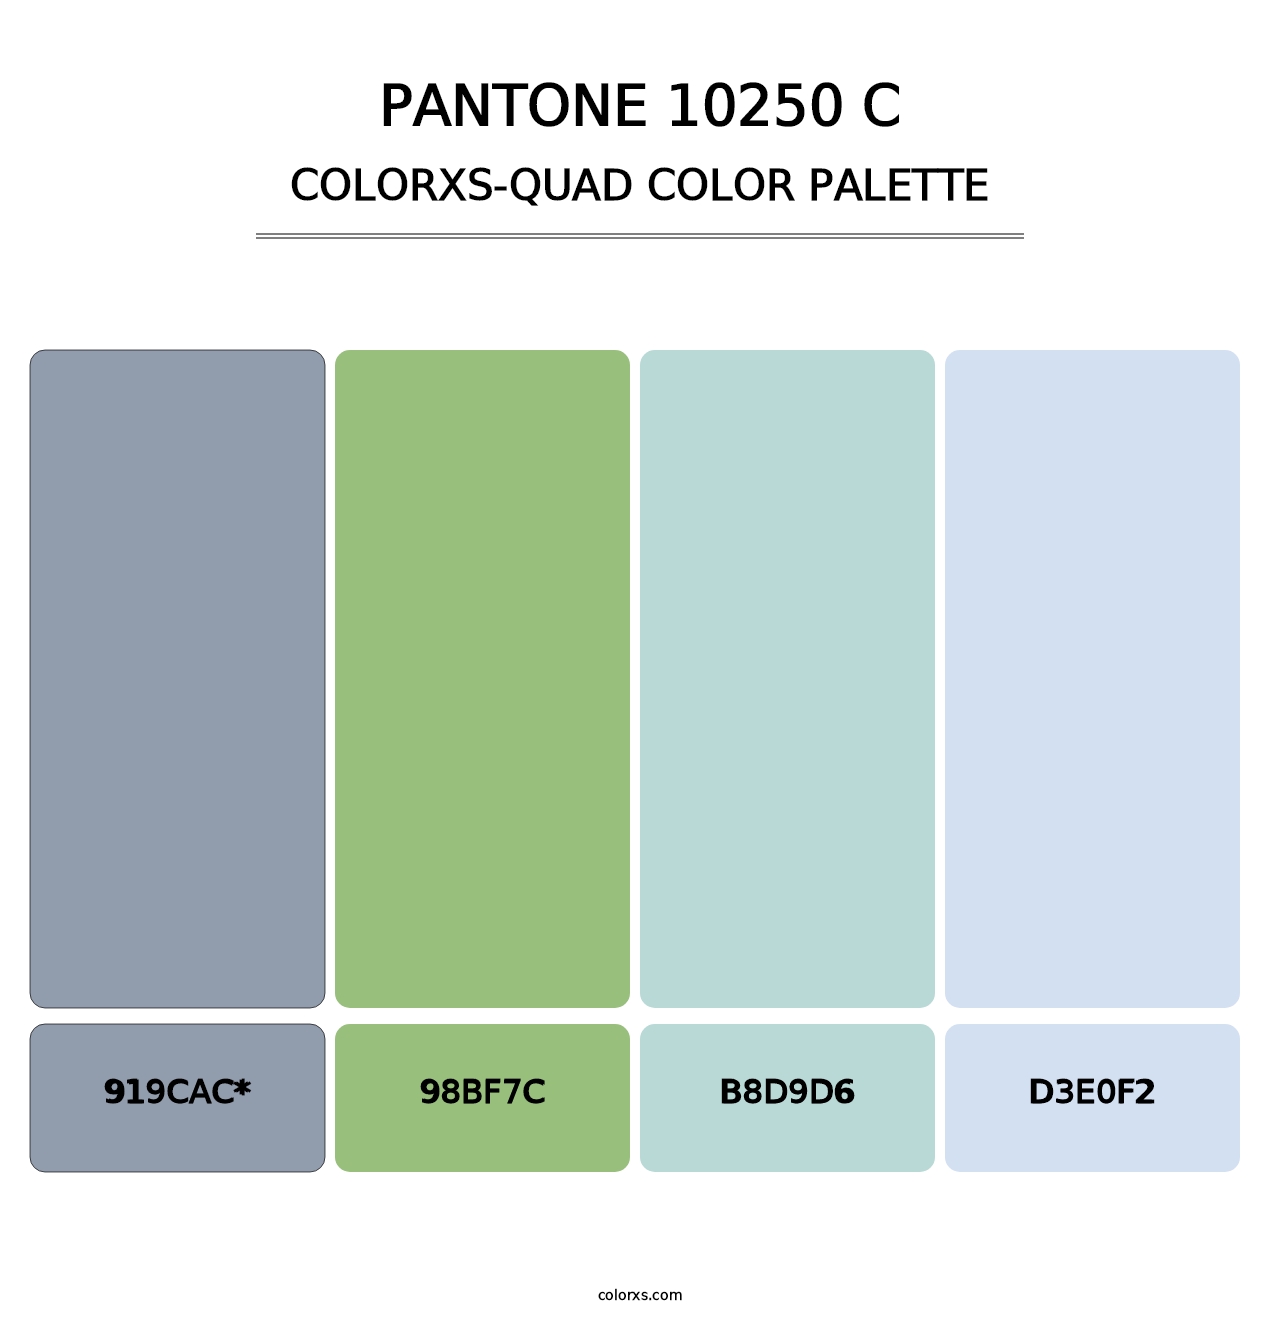 PANTONE 10250 C - Colorxs Quad Palette